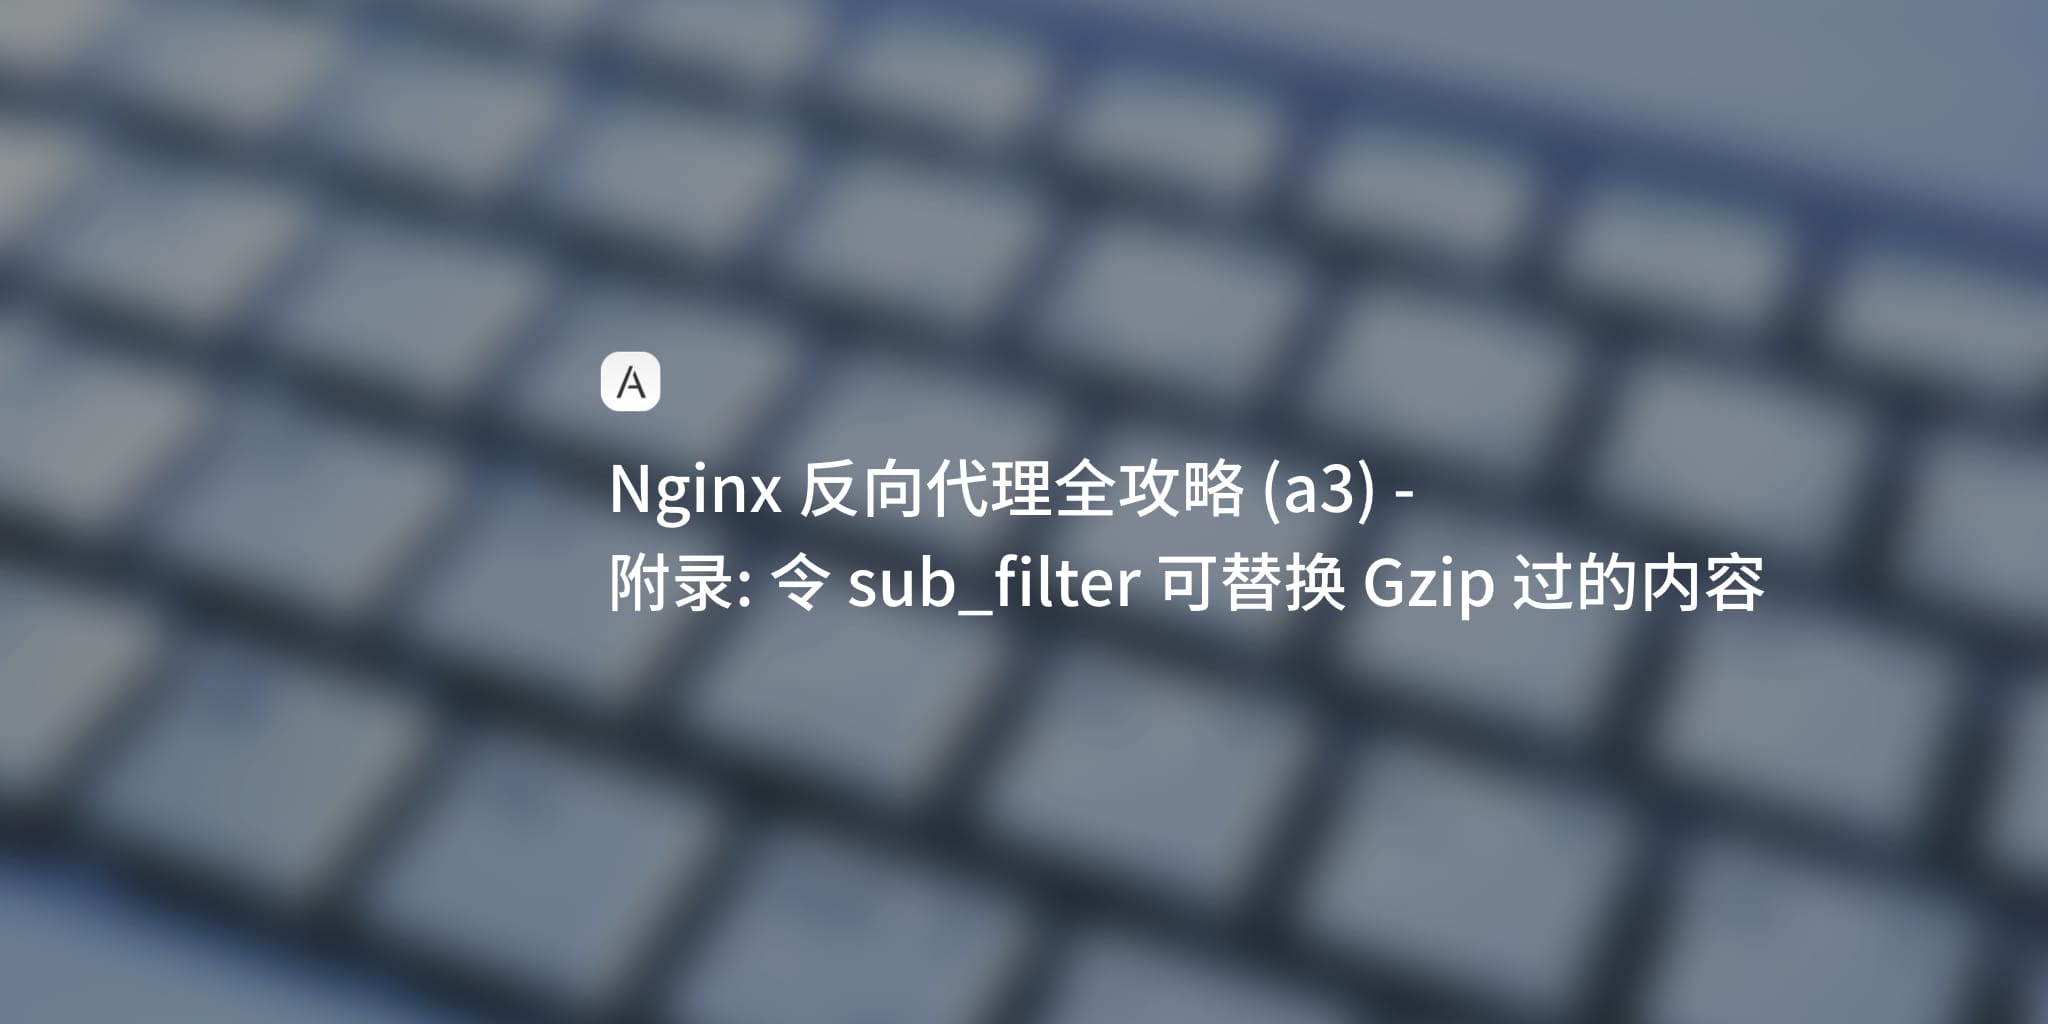 Nginx 学习笔记 (a3)